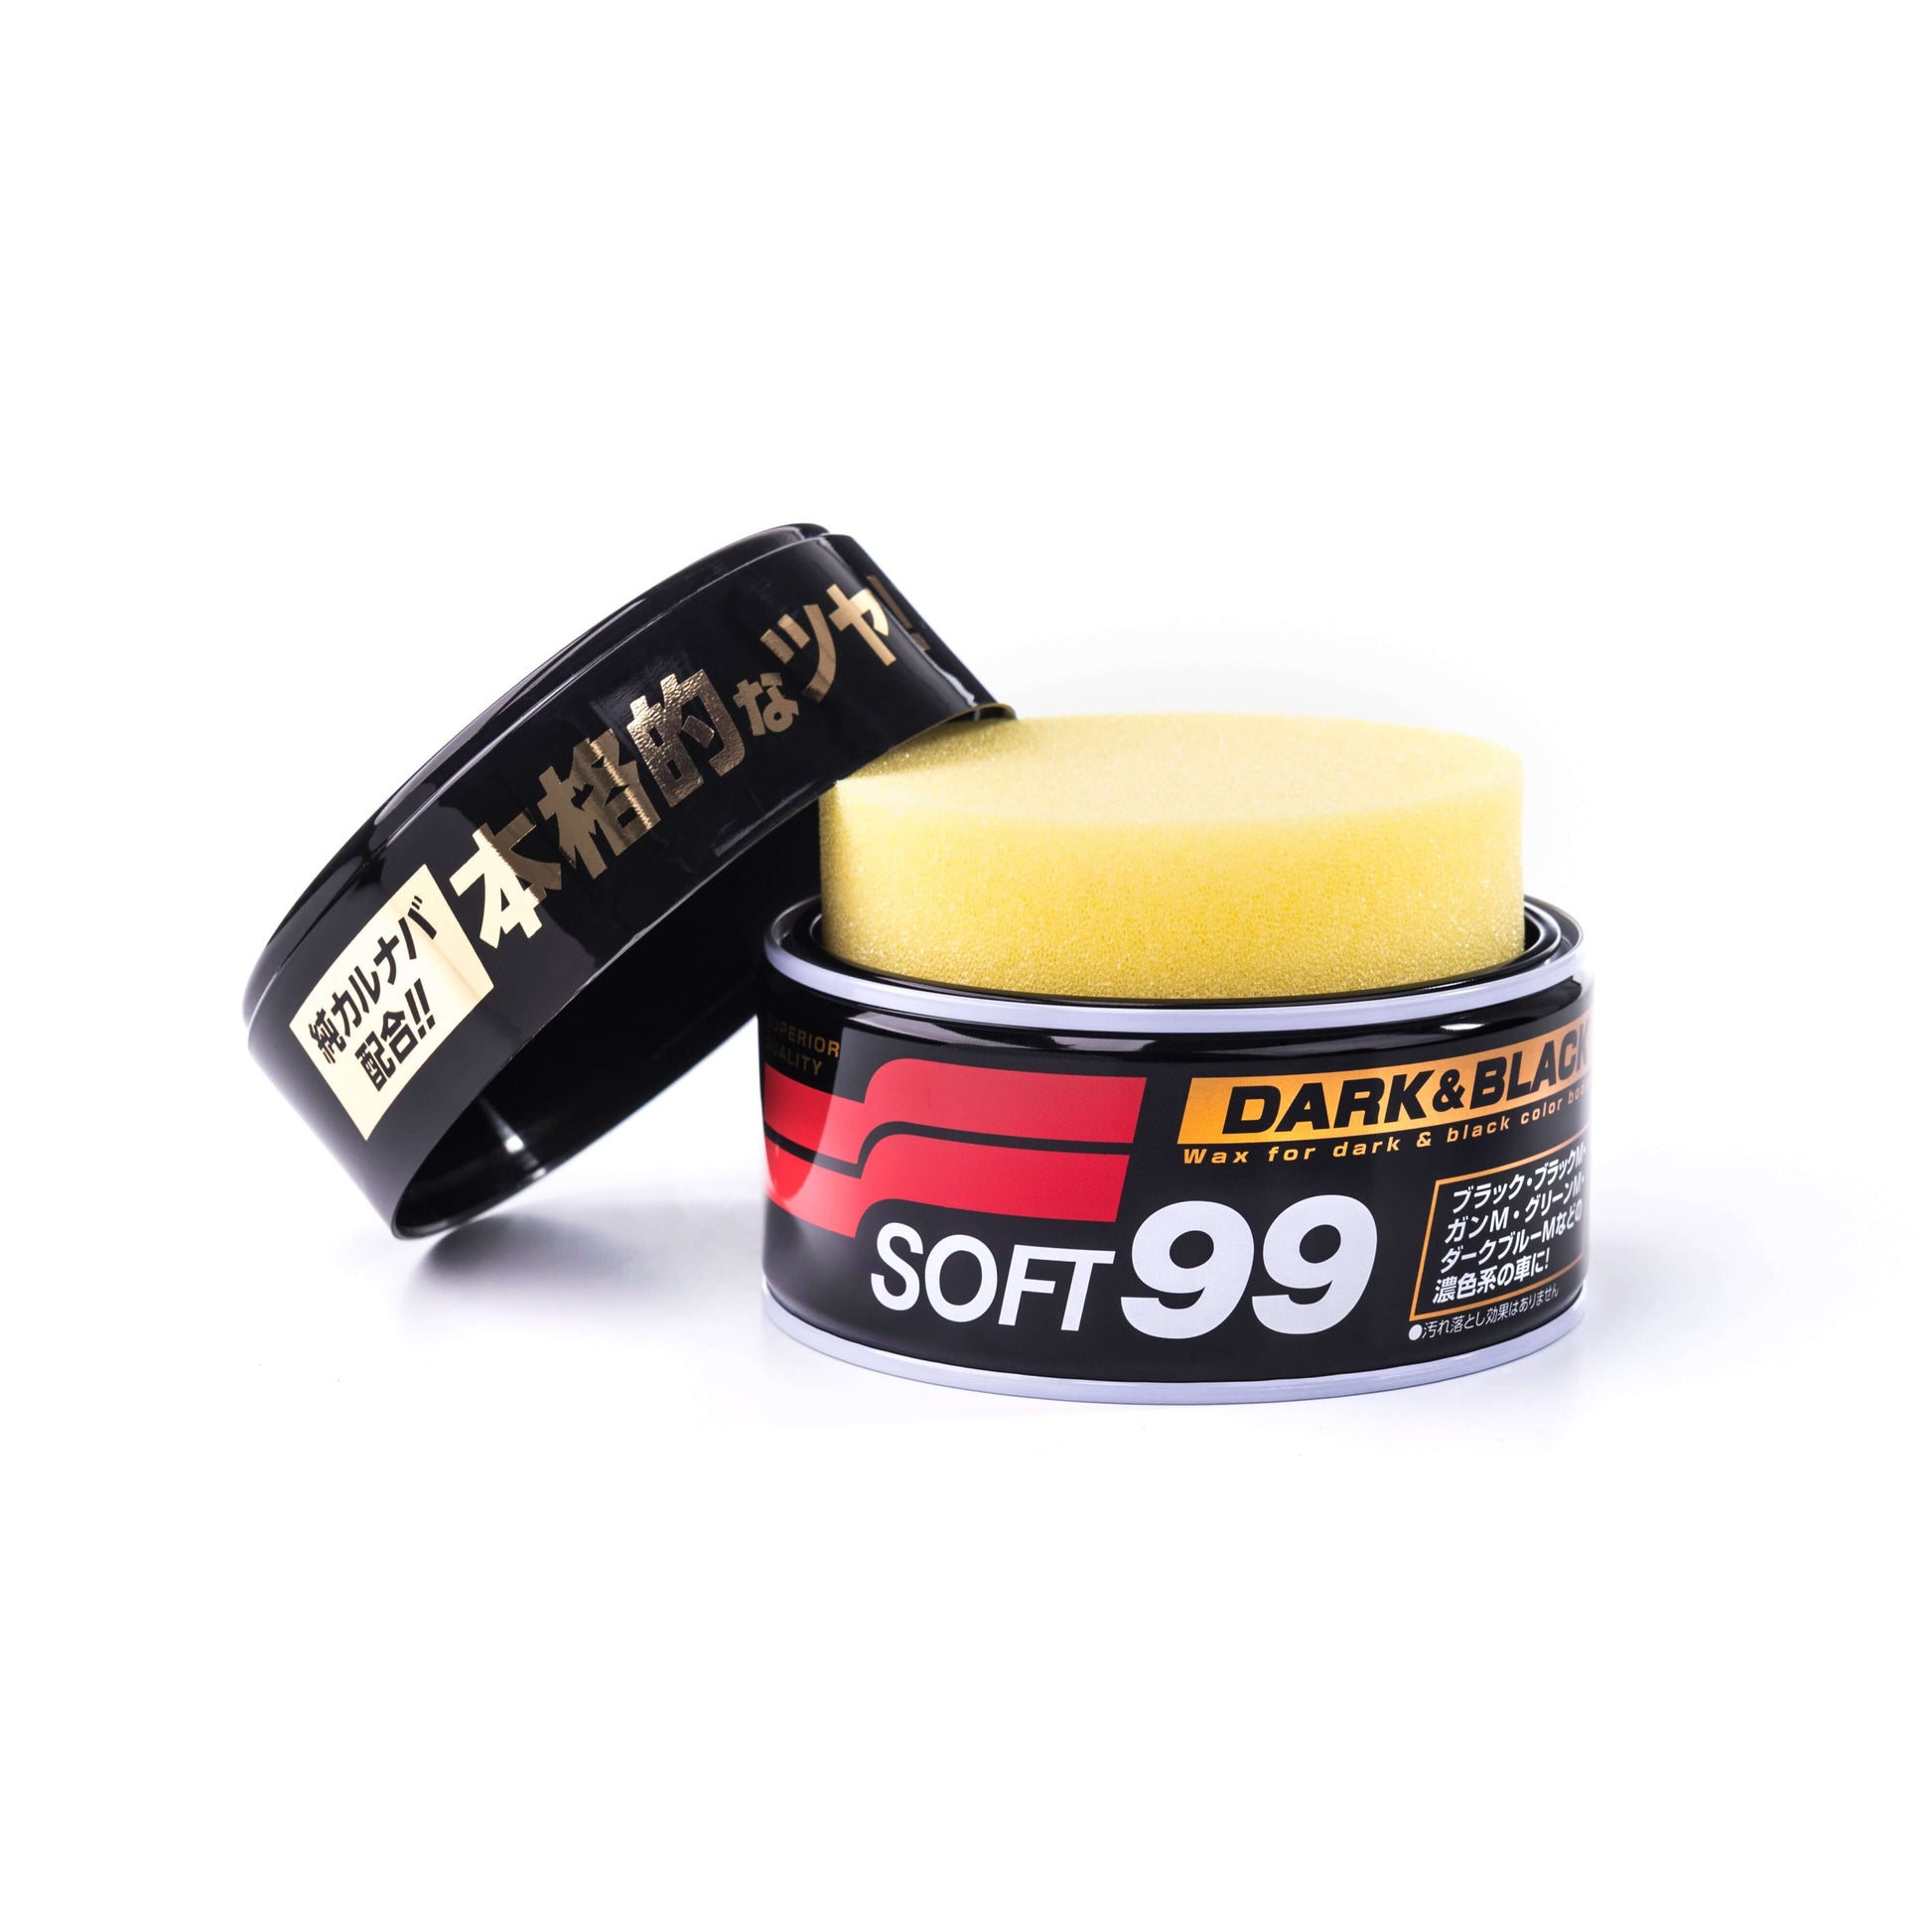 Soft99 - Dark & Black Wax 300g